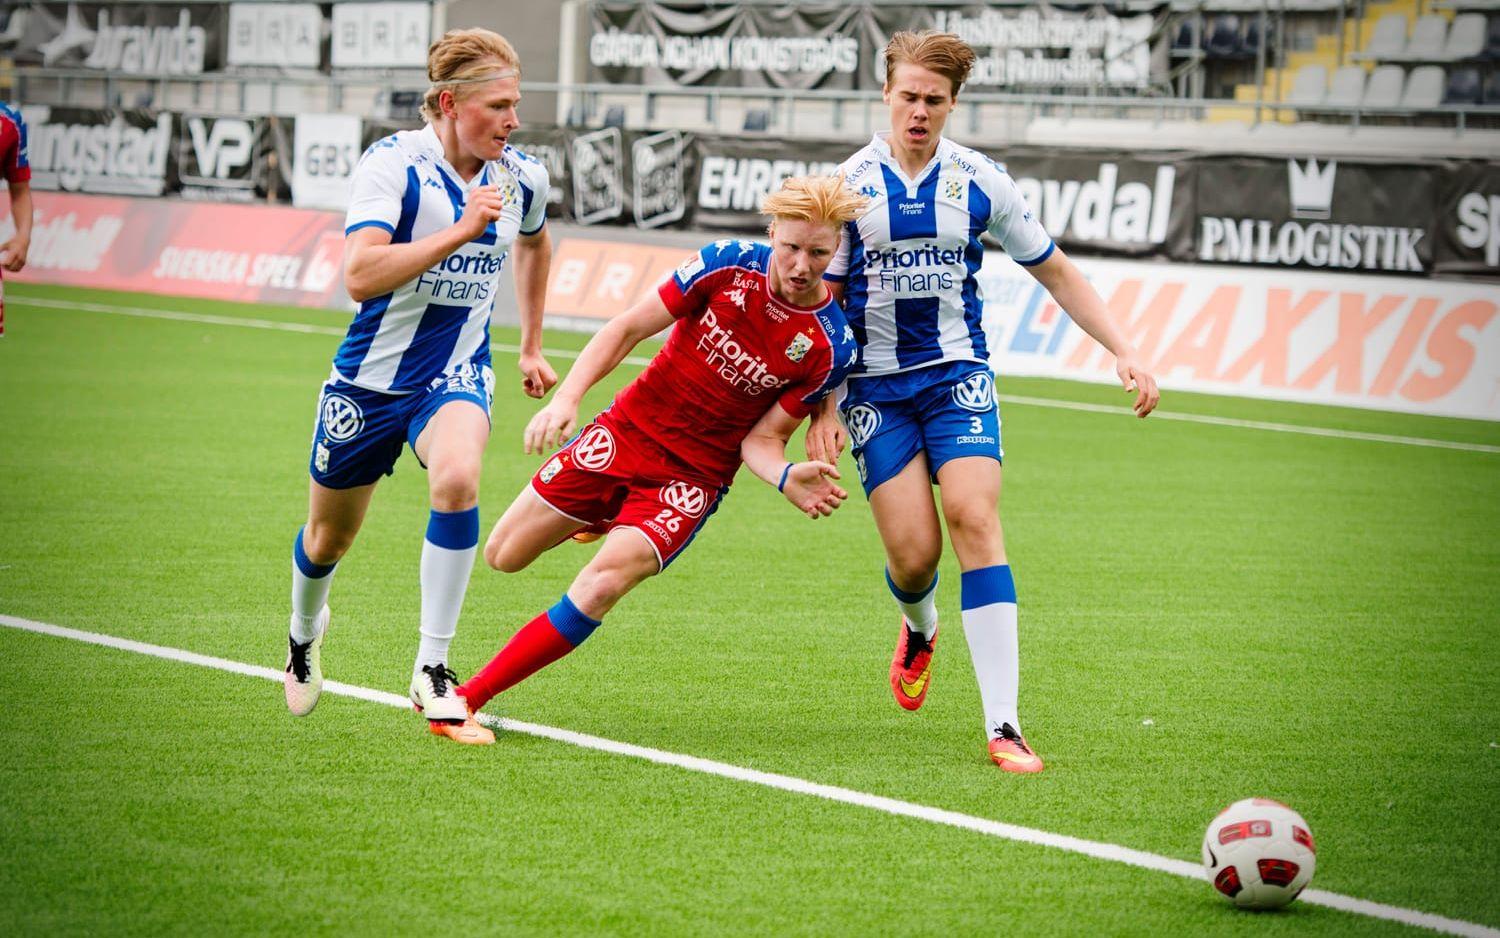 Frölundas stortalang Rasmus Dahlin (röd tröja) fick se sig besegrad när hans J18-grabbar förlorade med överlägsna 7-1. Bild: Jonas Lindstedt/GP